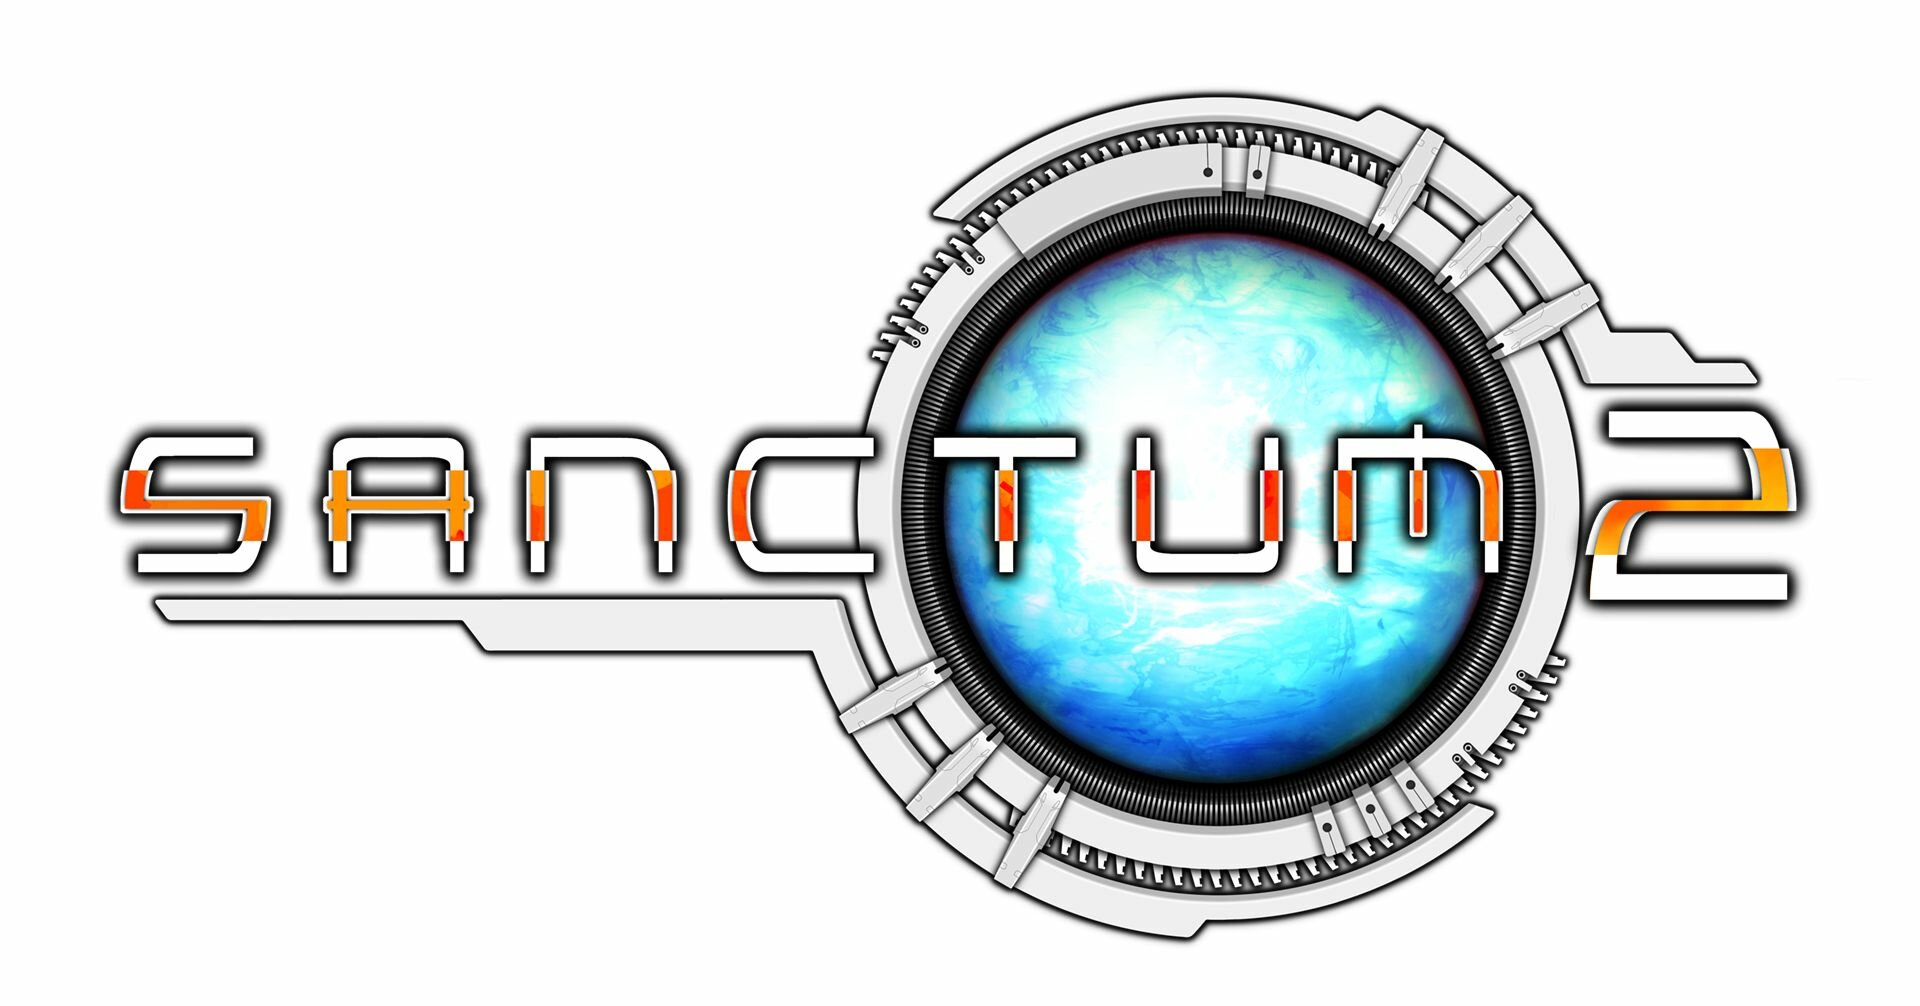 sanctum2_logo